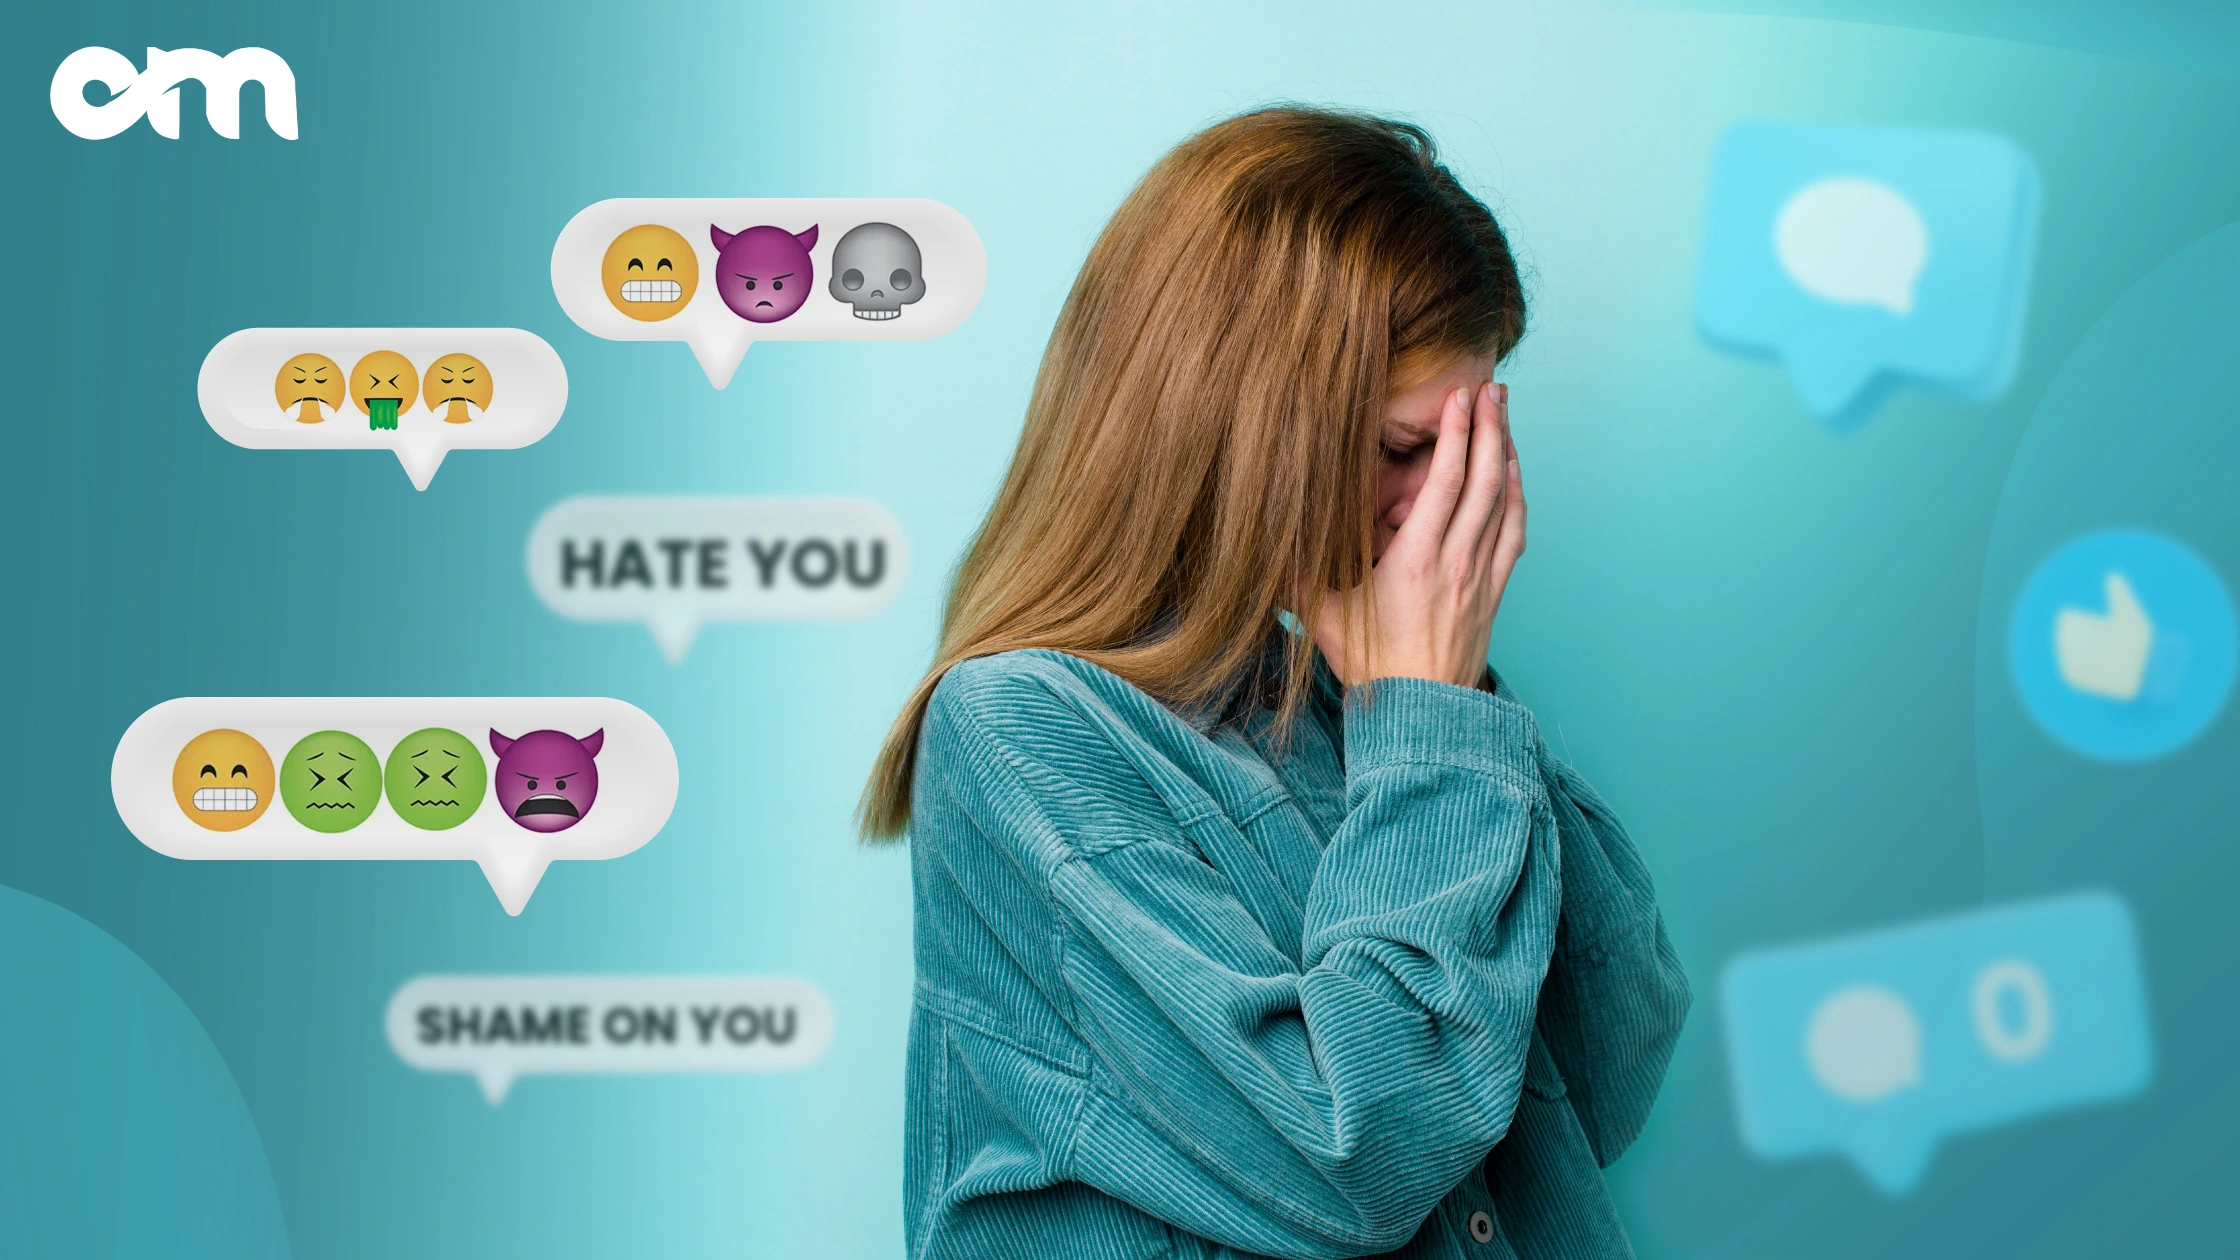 Phone Spy App Fight Back Against Online Harassment